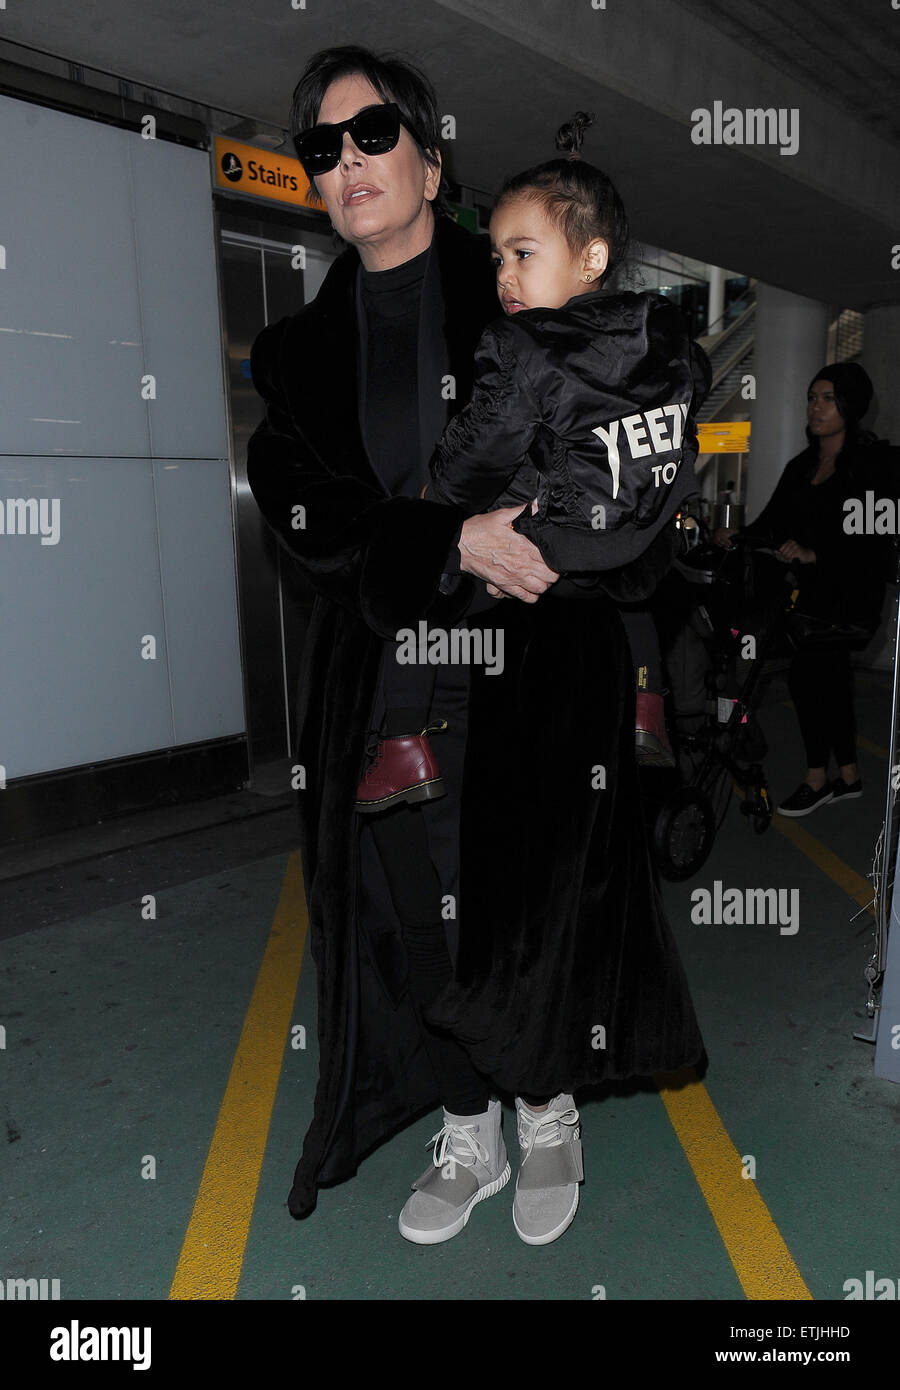 Kris Jenner, vistiendo un par de Kanye West Yeezy Originales Adidas x 750 Boost, llega al aeropuerto de Heathrow llevando bebé North West, llevaba una chaqueta de bombardero Yeezus Tour' en